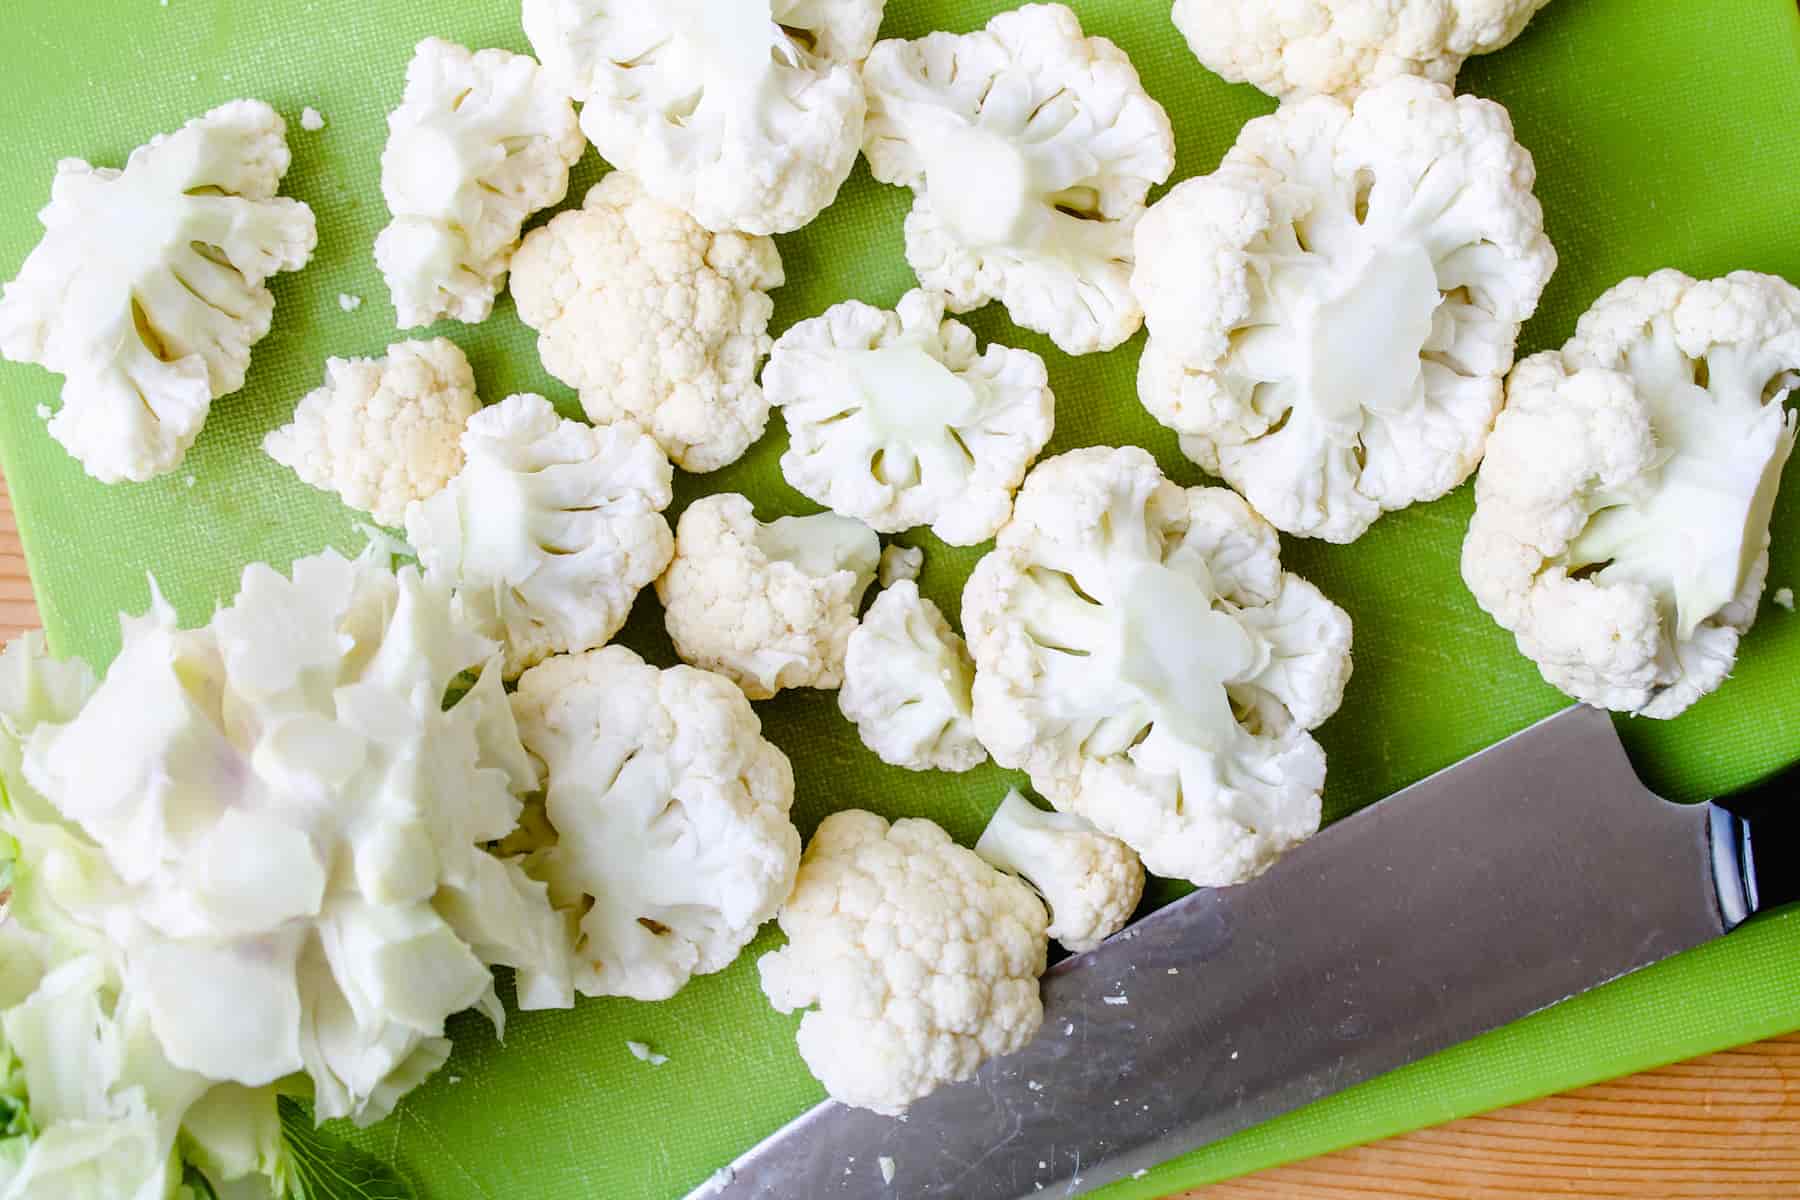 Cauliflower florets being chopped on a cutting board.